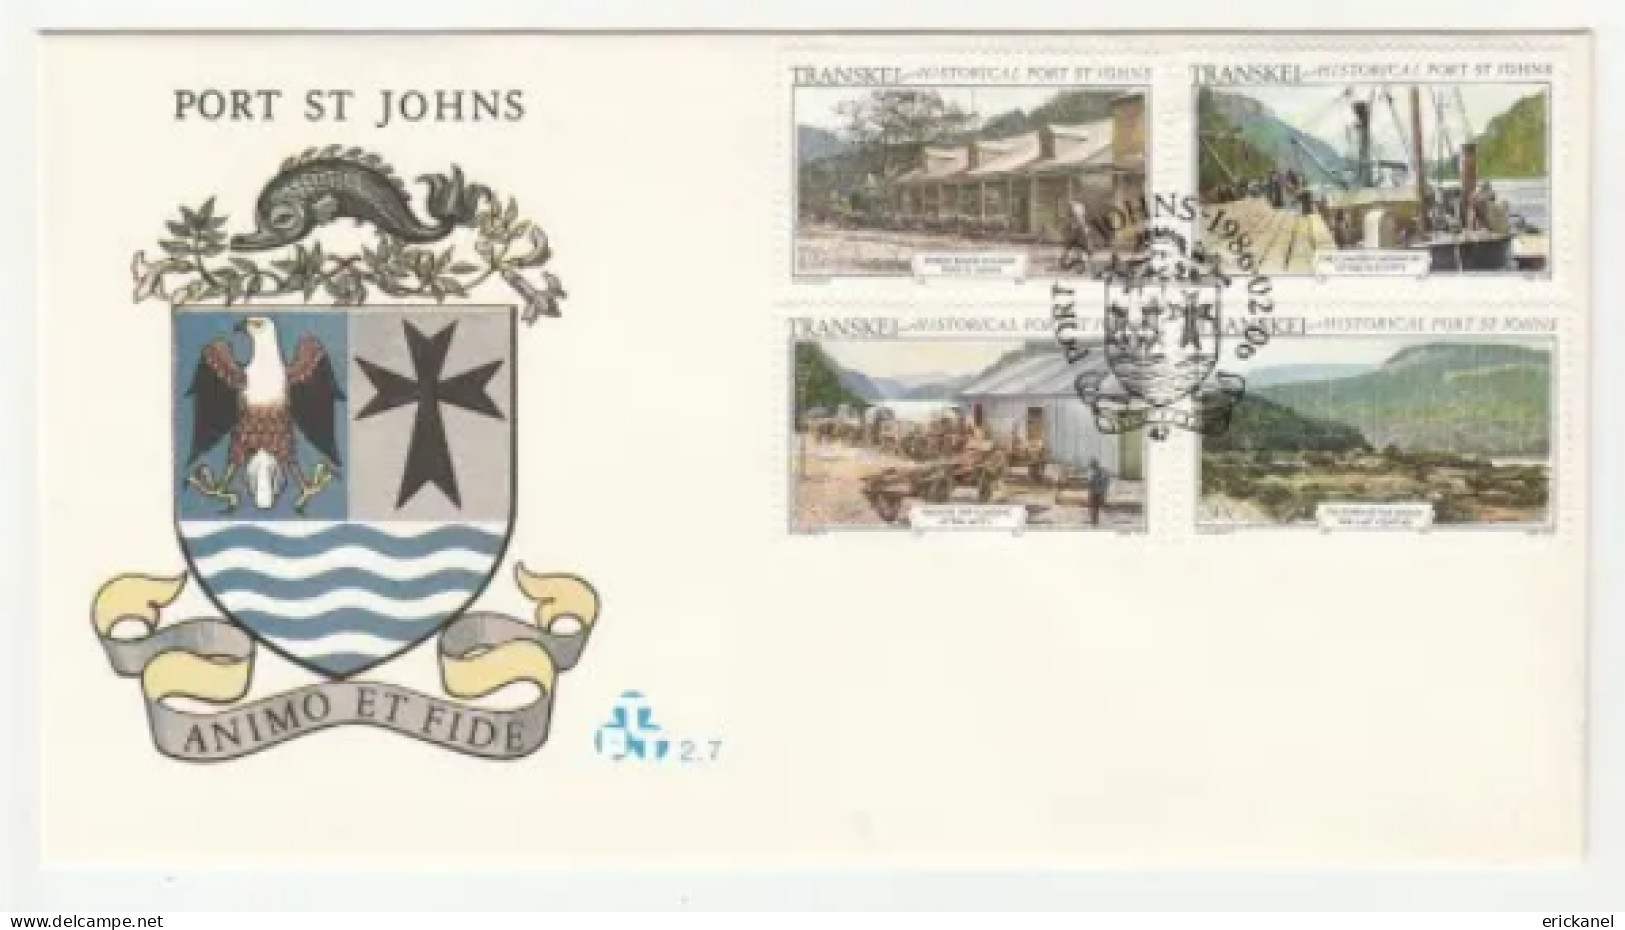 1986 Transkei Historical Port St Johns FDC 2.7 - Transkei